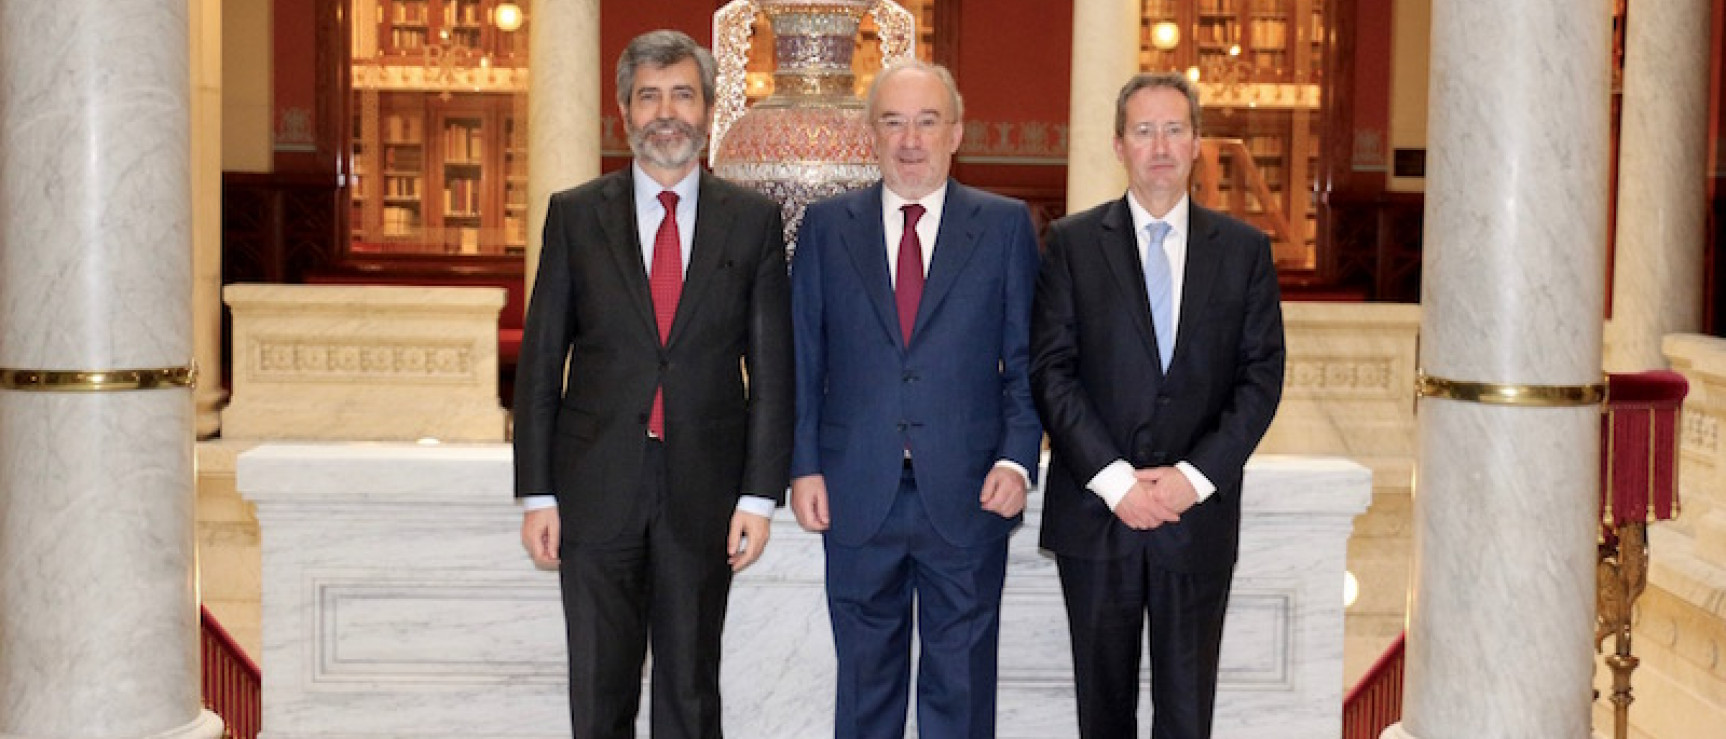 El secretario de la RAE (centro) con los presidentes del Tribunal Supremo de España y Portugal.